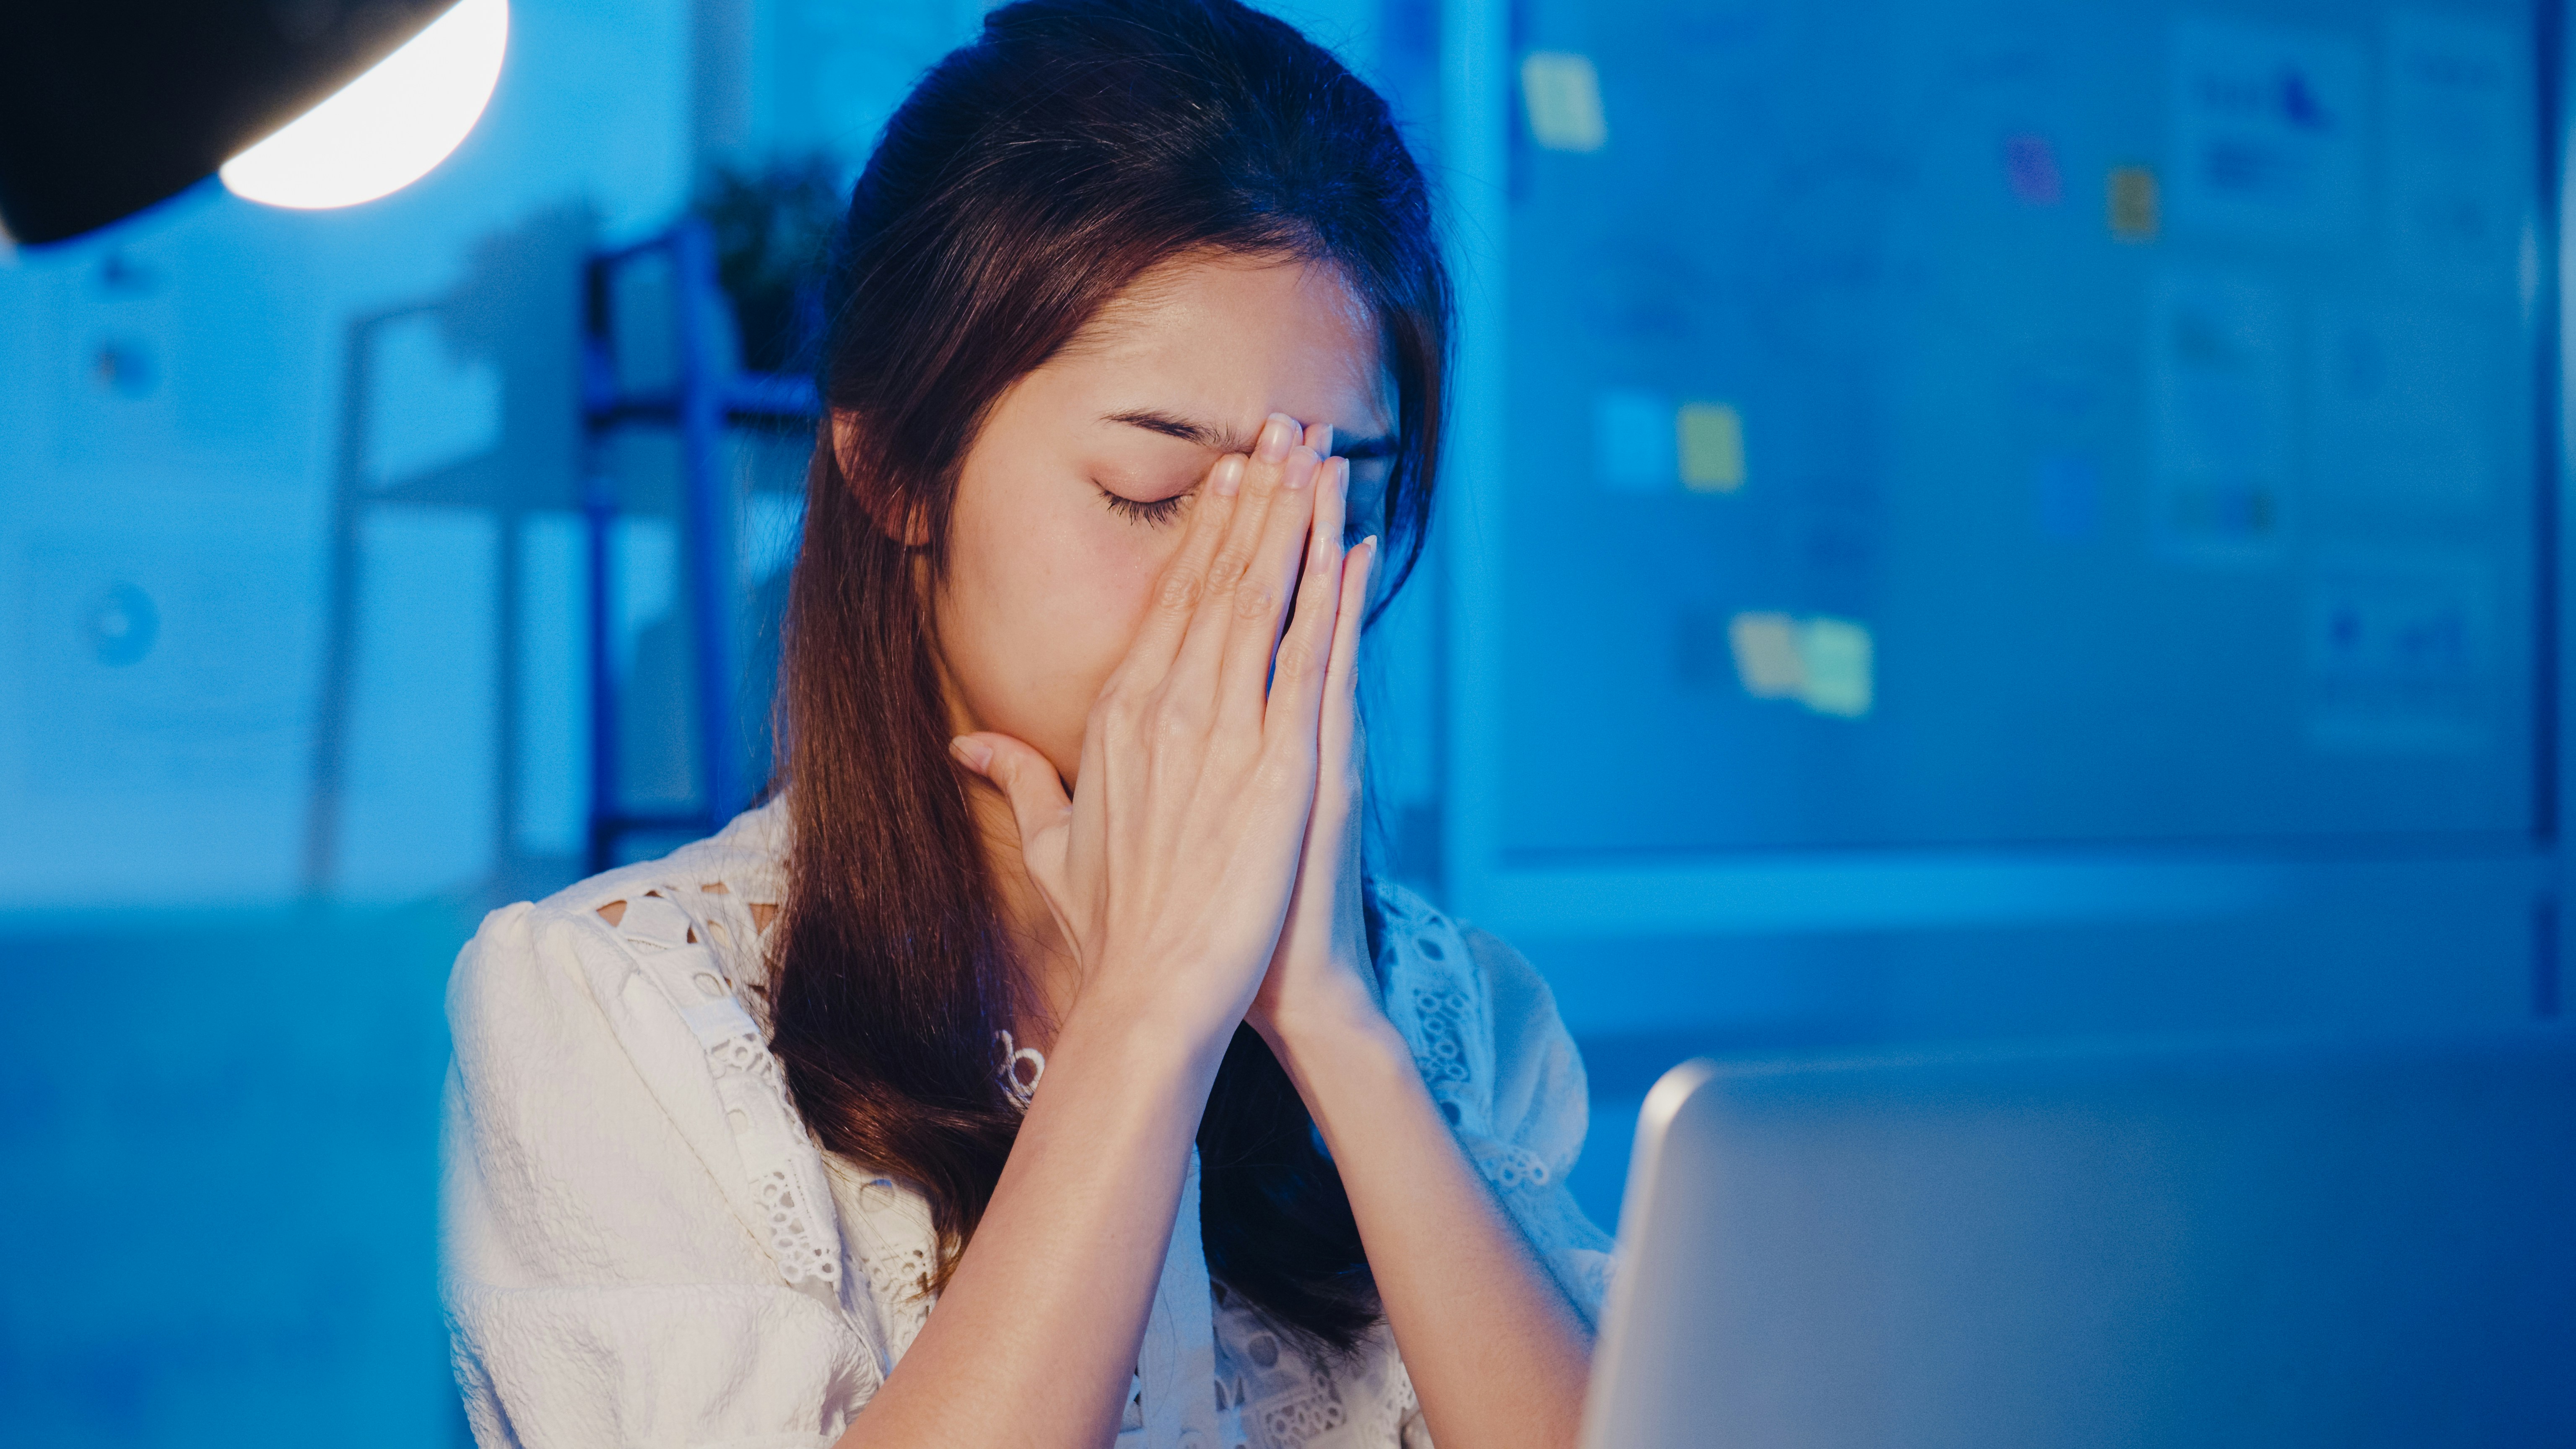 パソコン作業をしている女性が頭痛で悩んでいるイメージ